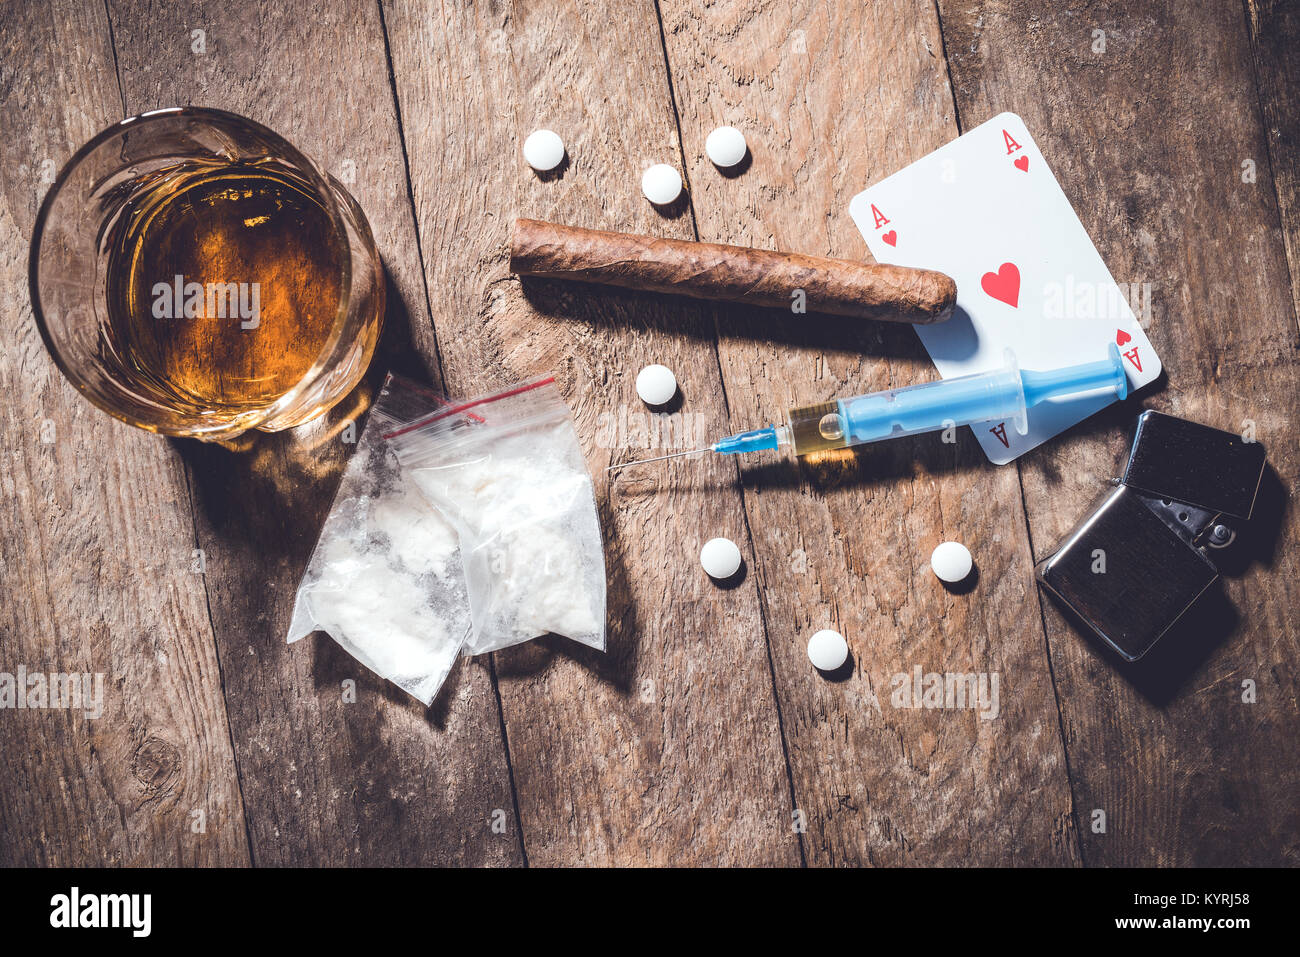 Tettuccio di colpo di droghe pesanti su un vecchio tavolo di legno. Foto Stock